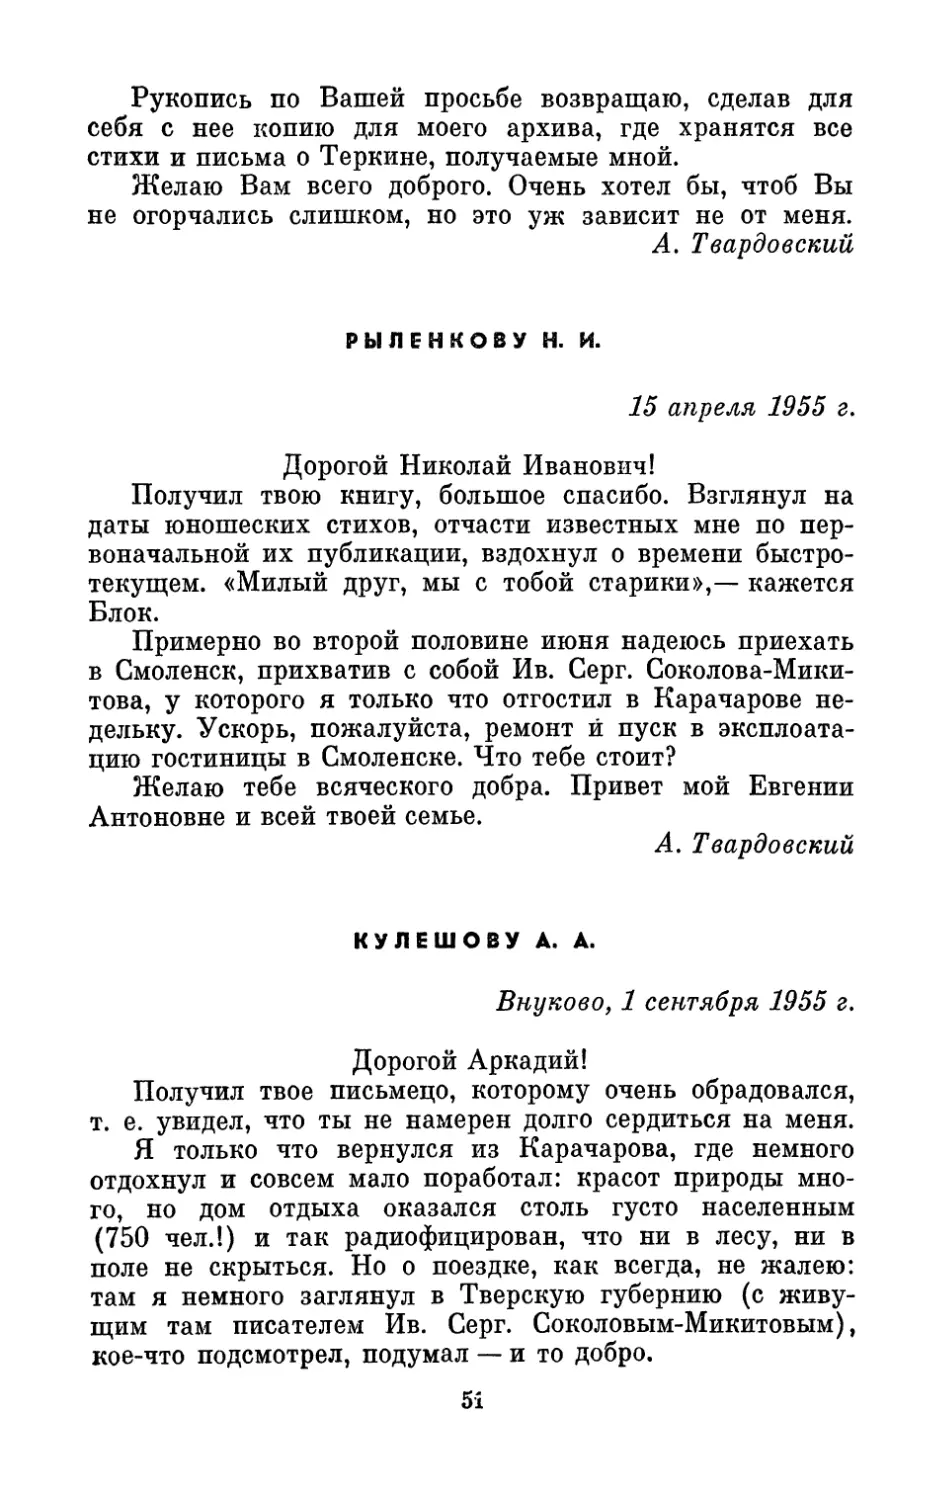 Рыленкову Н. И., 15 апреля 1955 г.
Кулешову А. А., 1 сентября 1955 г.